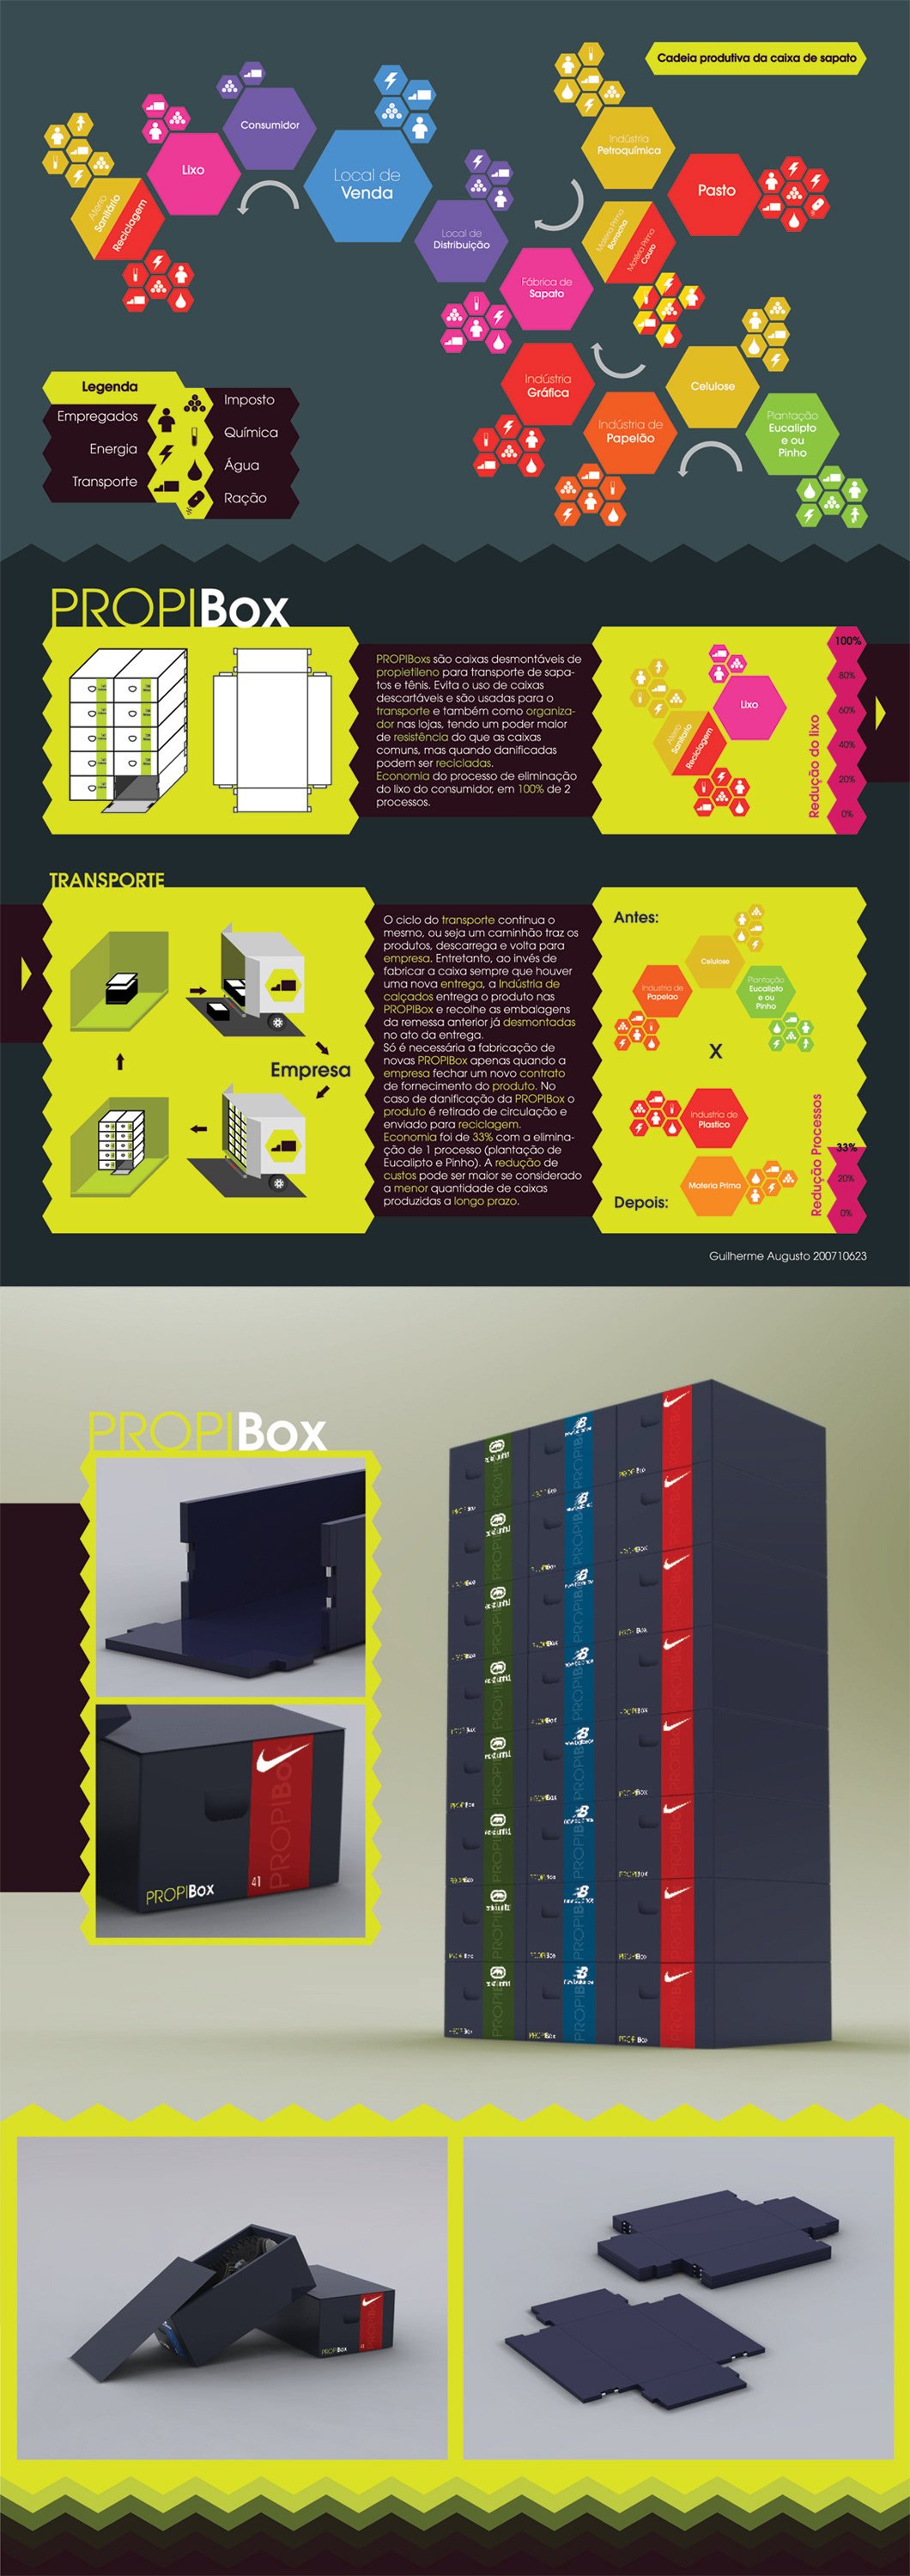 shoes box tenis Caixa modular infográfico infographic Produção